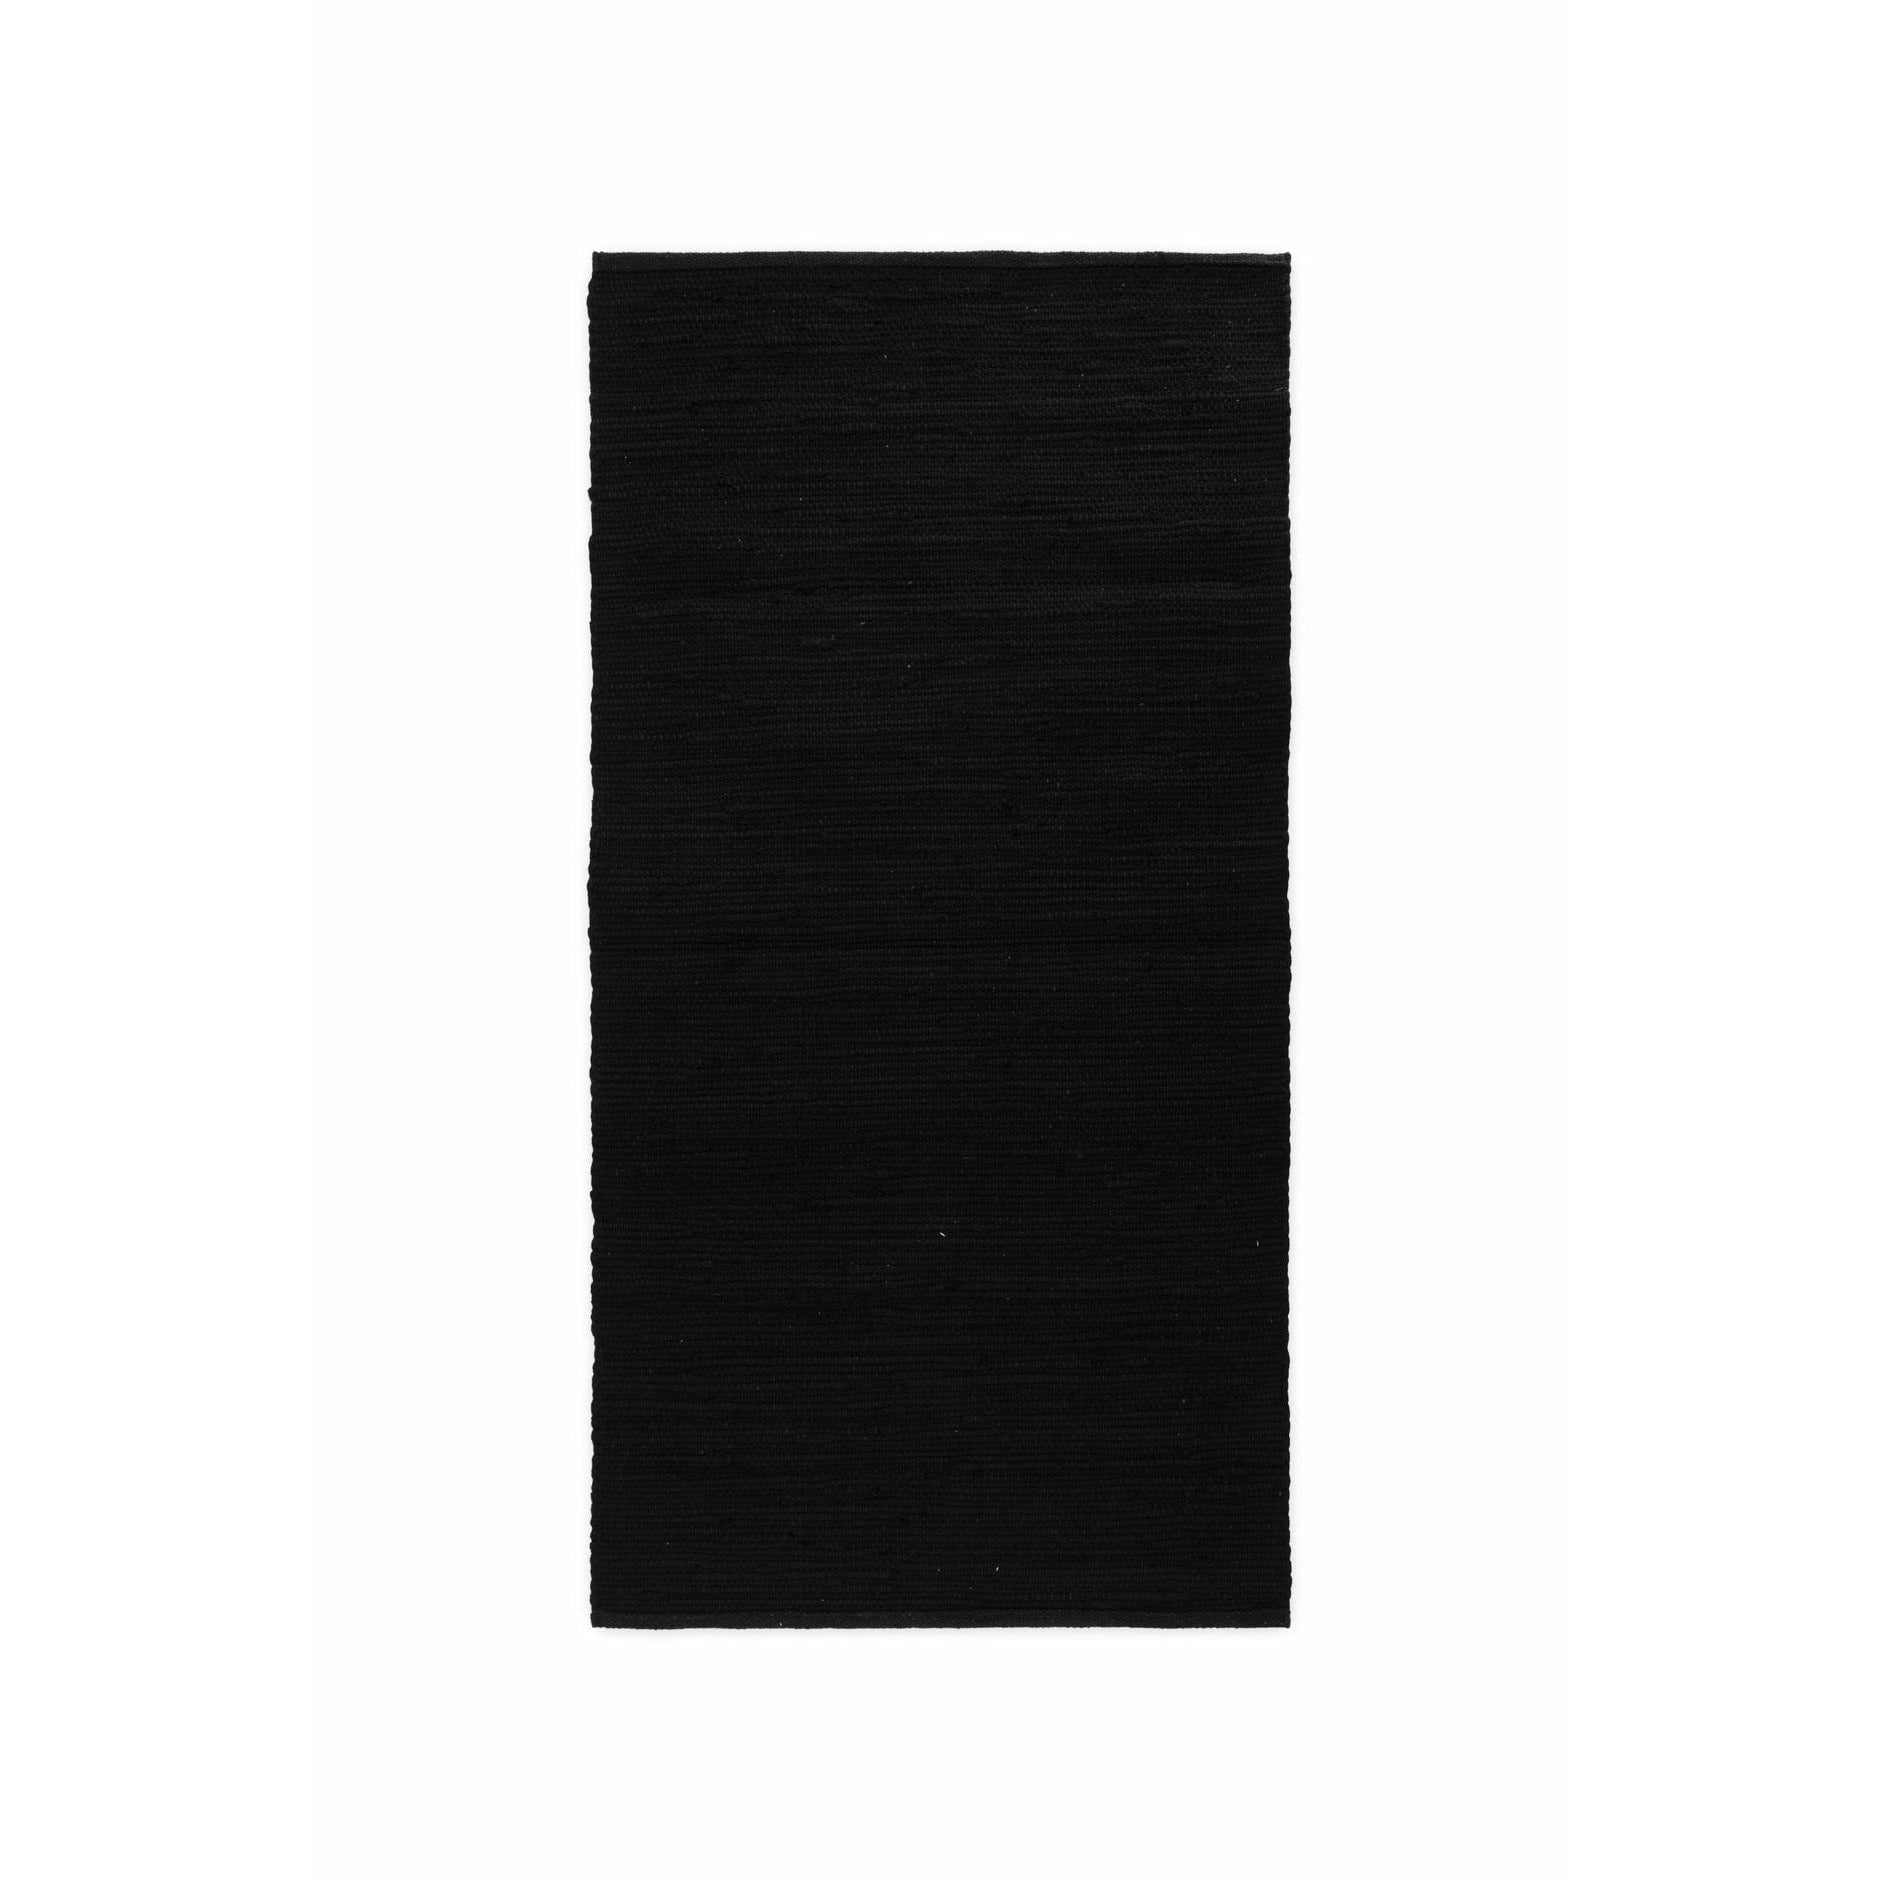 Rug Solid Katoenen tapijt zwart, 170 x 240 cm